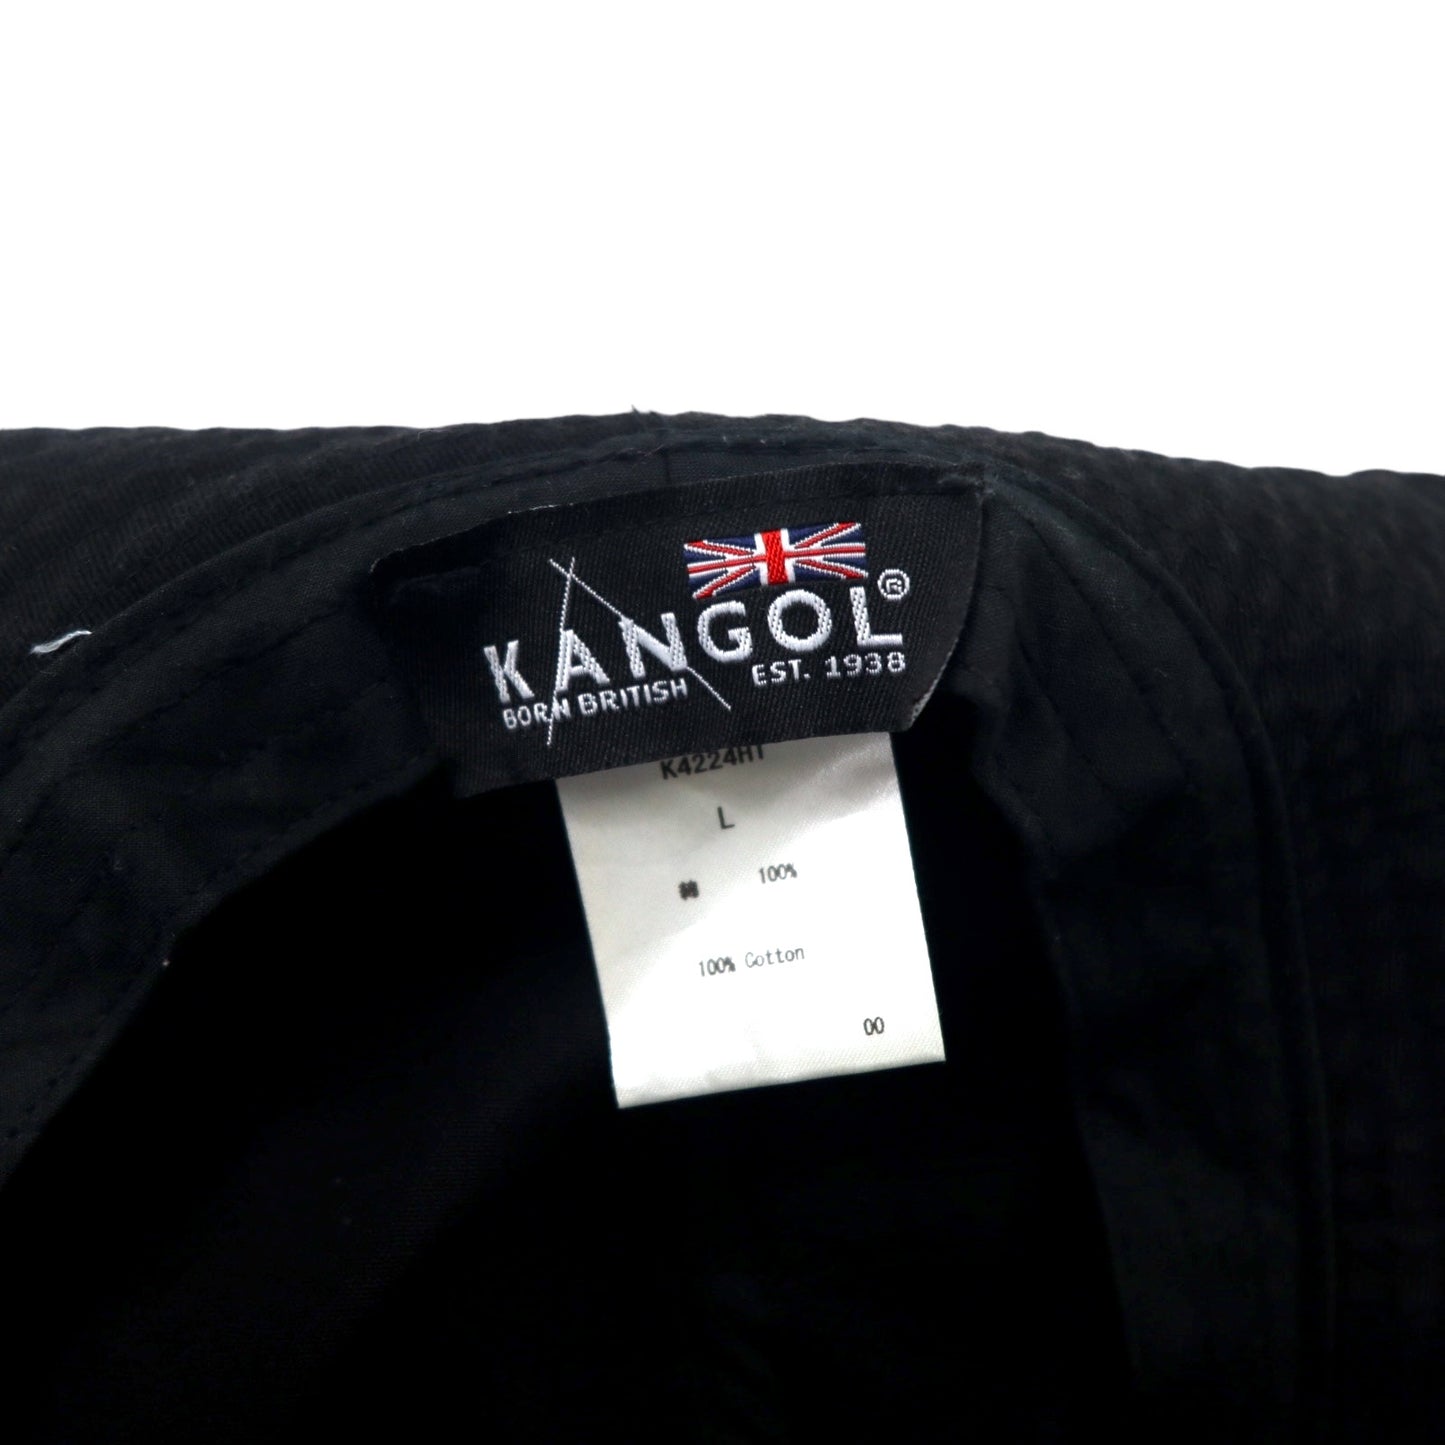 KANGOL バケットハット L ブラック コットン ワンポイントロゴ刺繍 Washed Bucket K4224HT